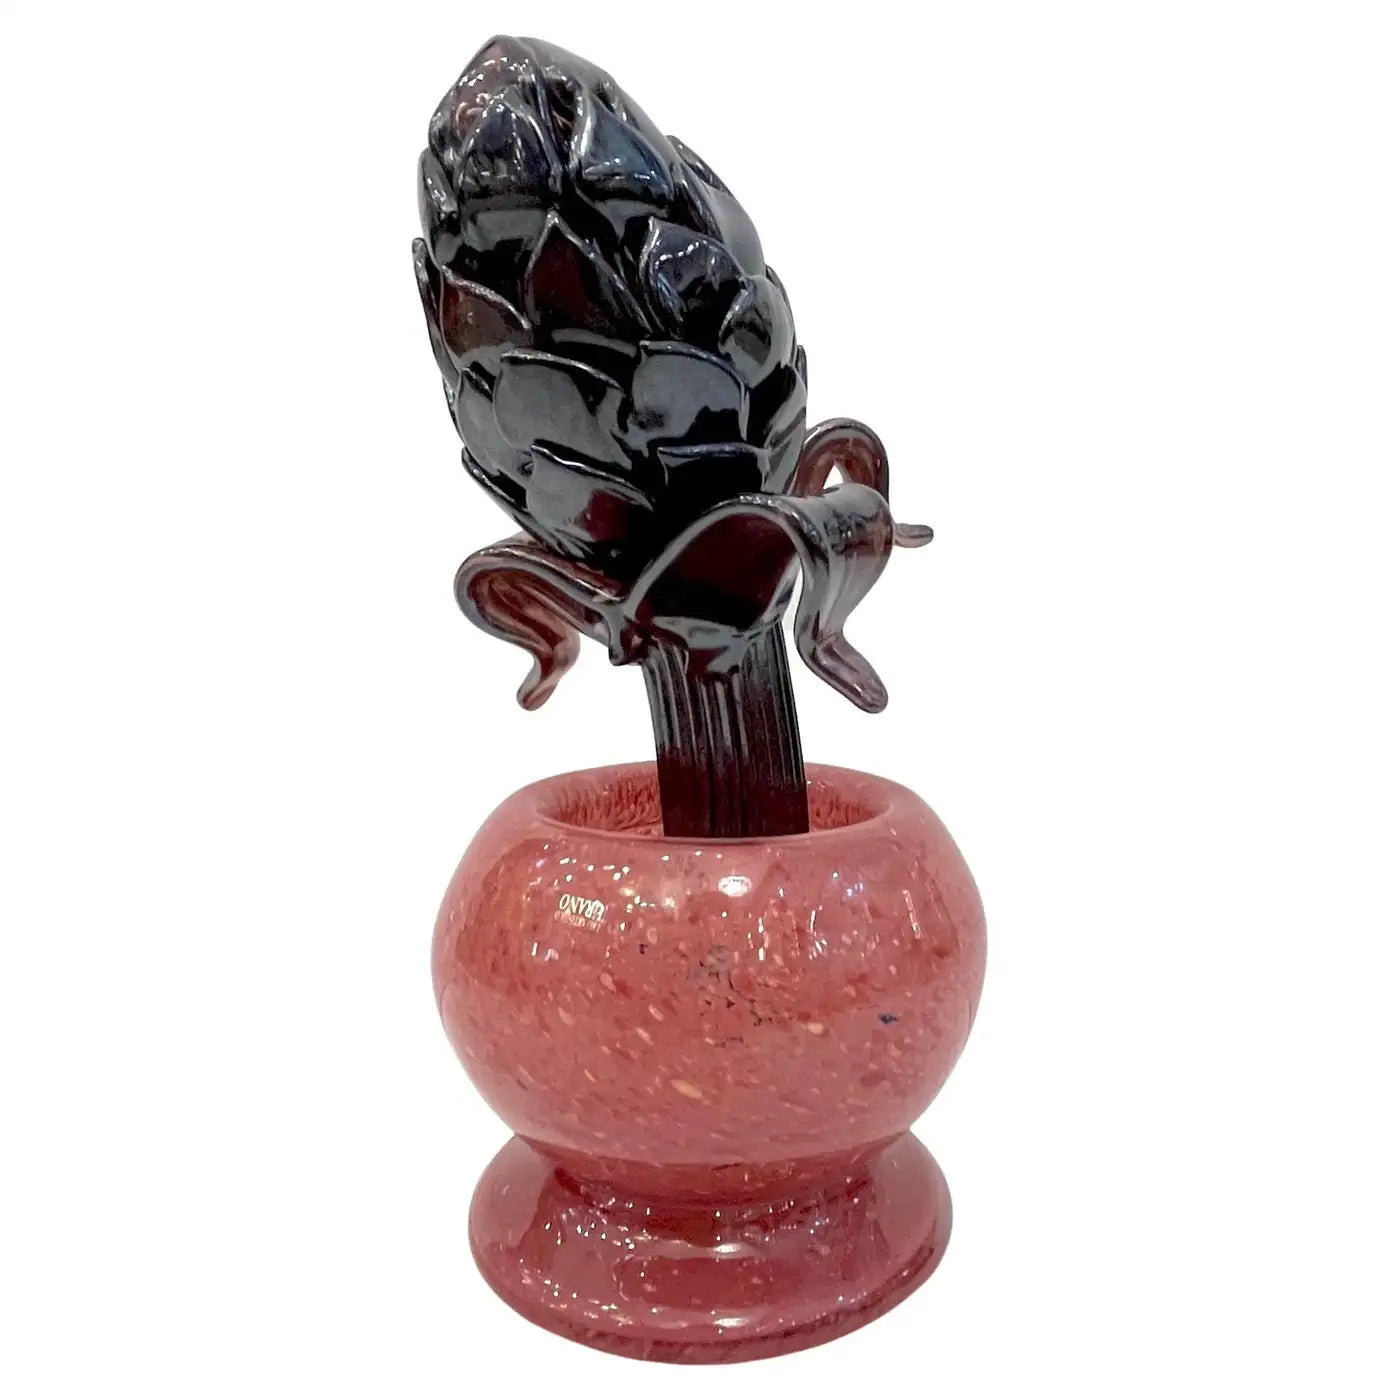 2000 Italian Dark Purple Murano Art Glass Artichoke Flower Plant in Red Pink Pot